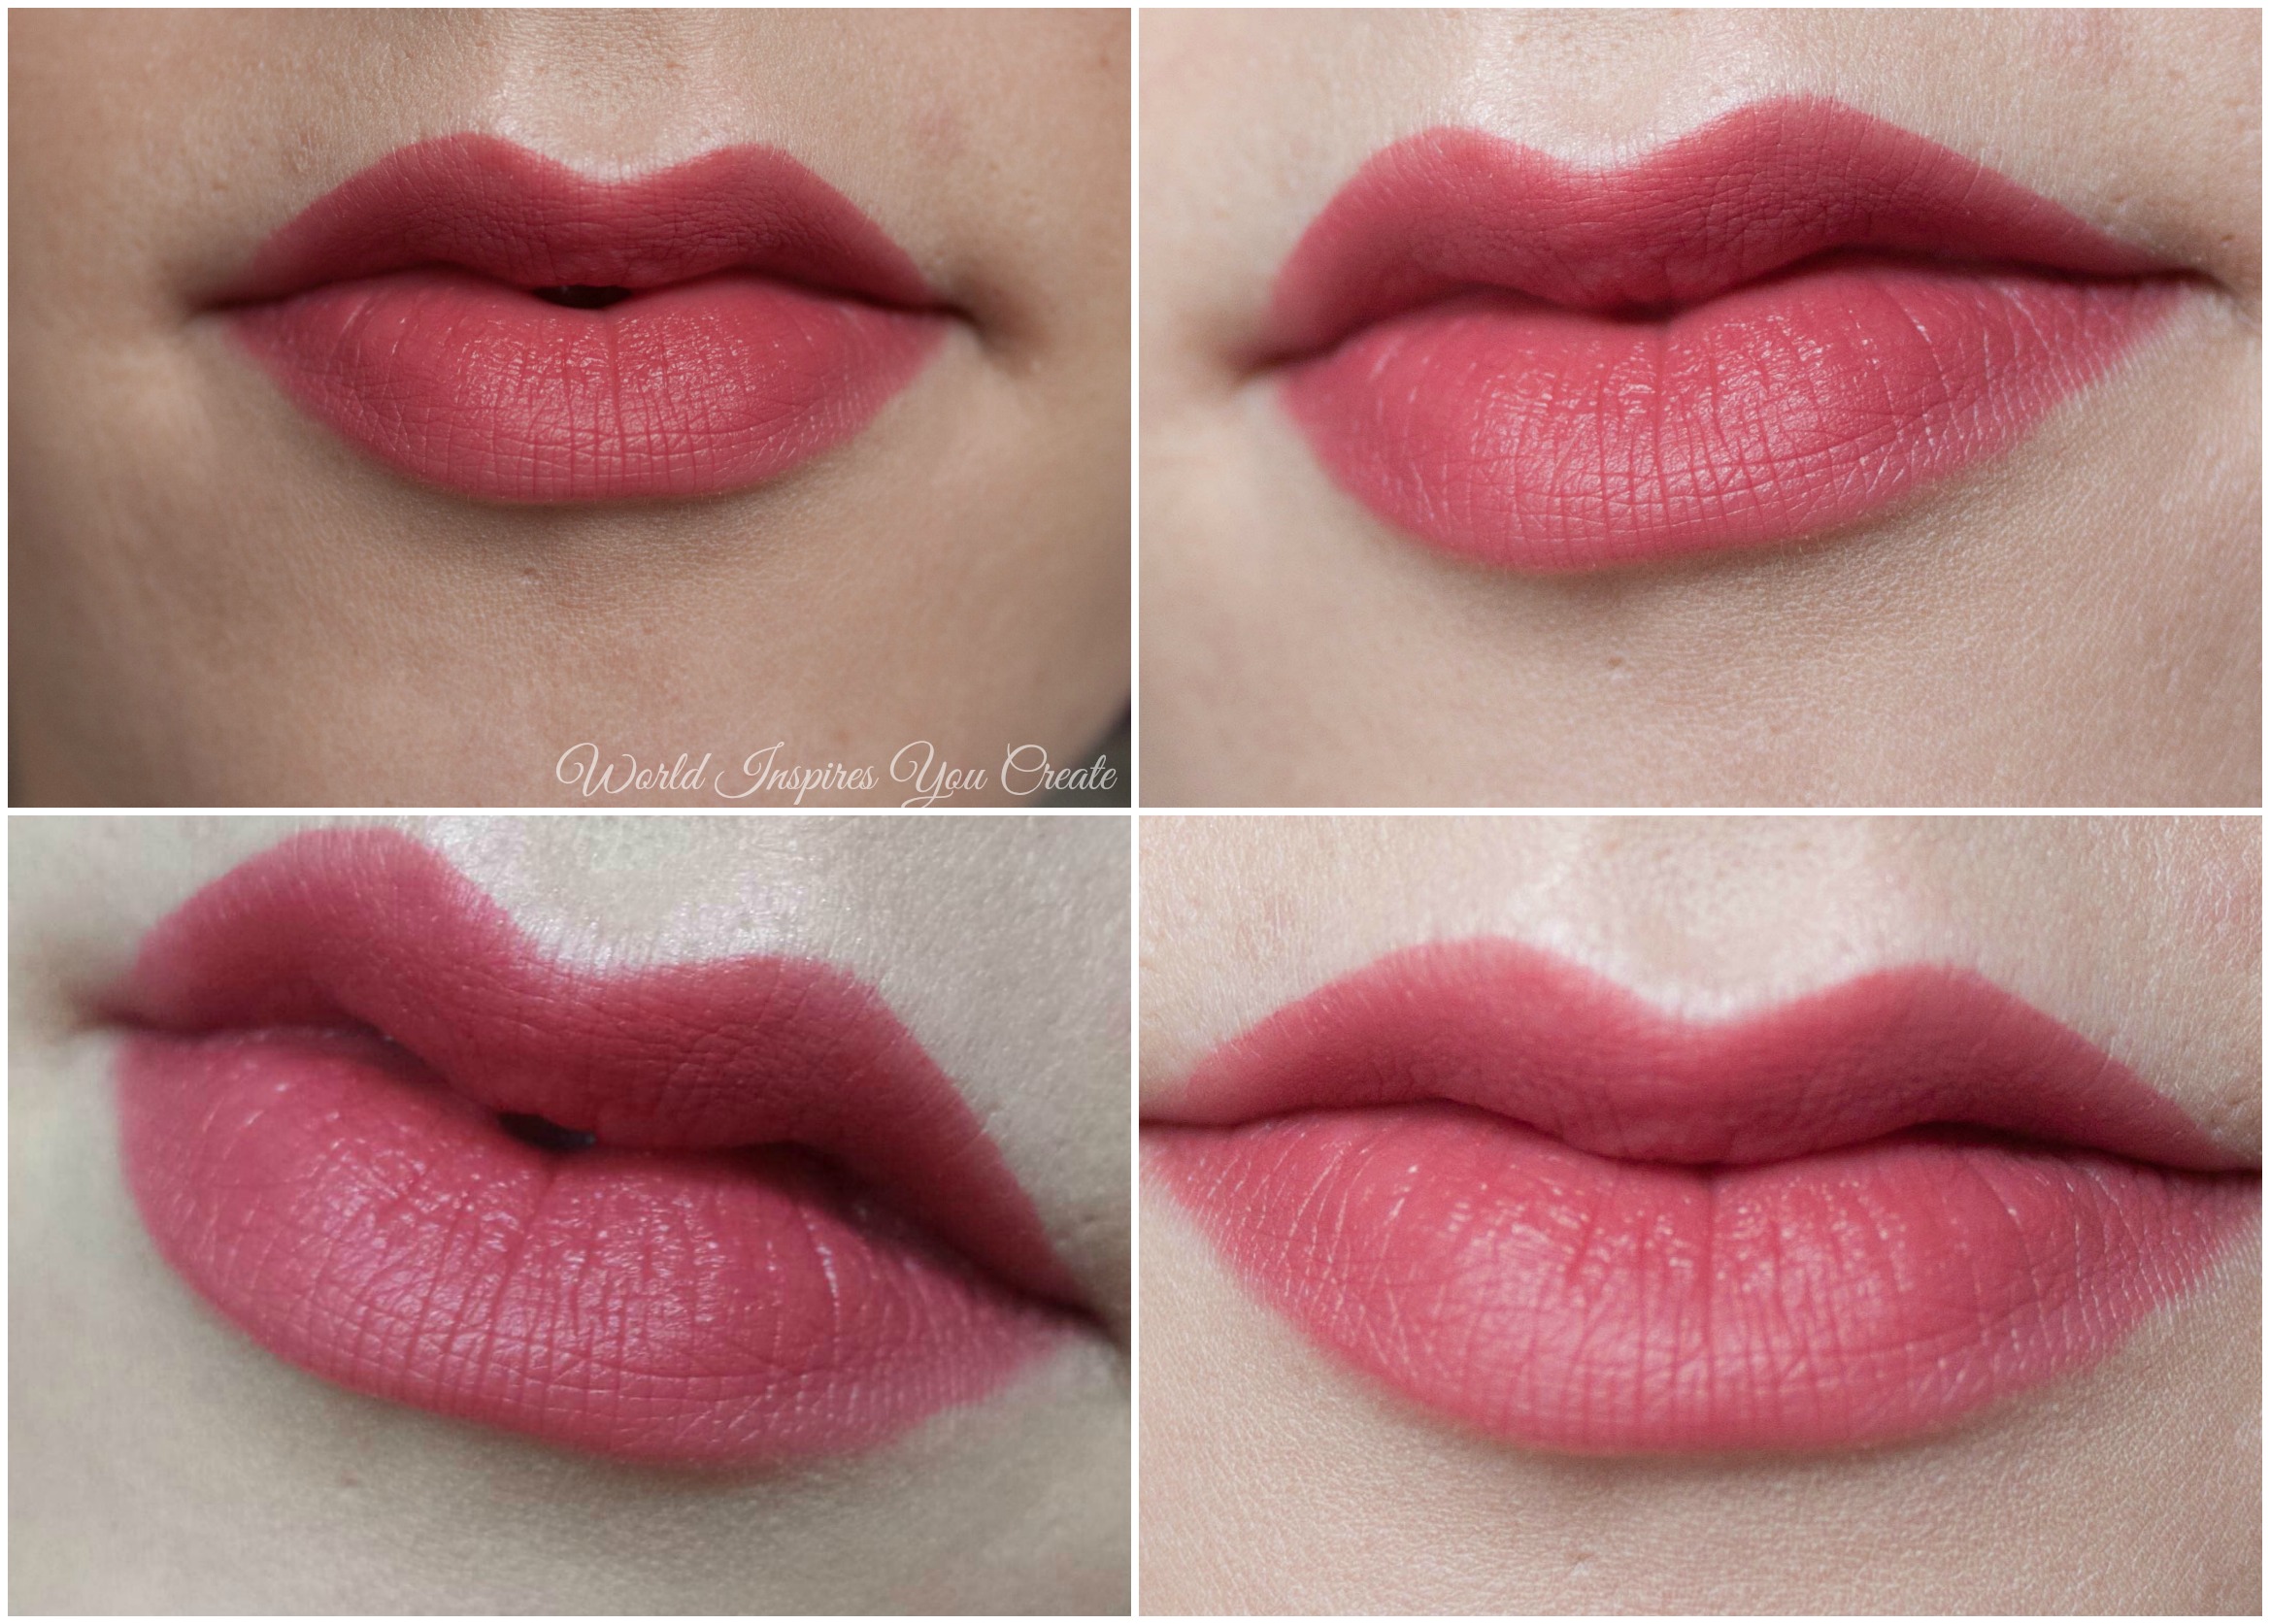 giorgio armani beauty lip magnet liquid lipstick